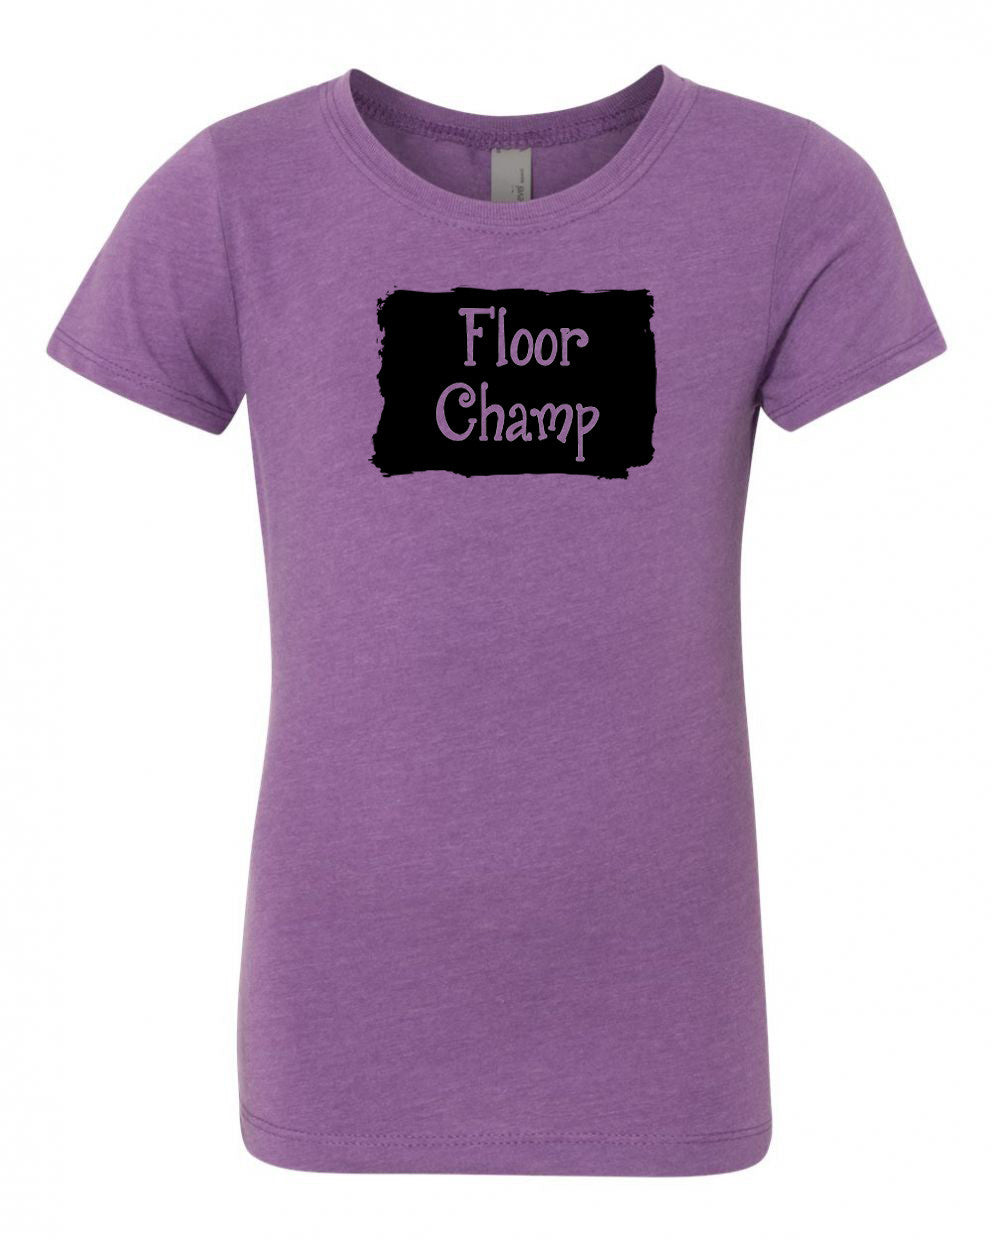 Floor Champ Girls T-Shirt Purple Berry